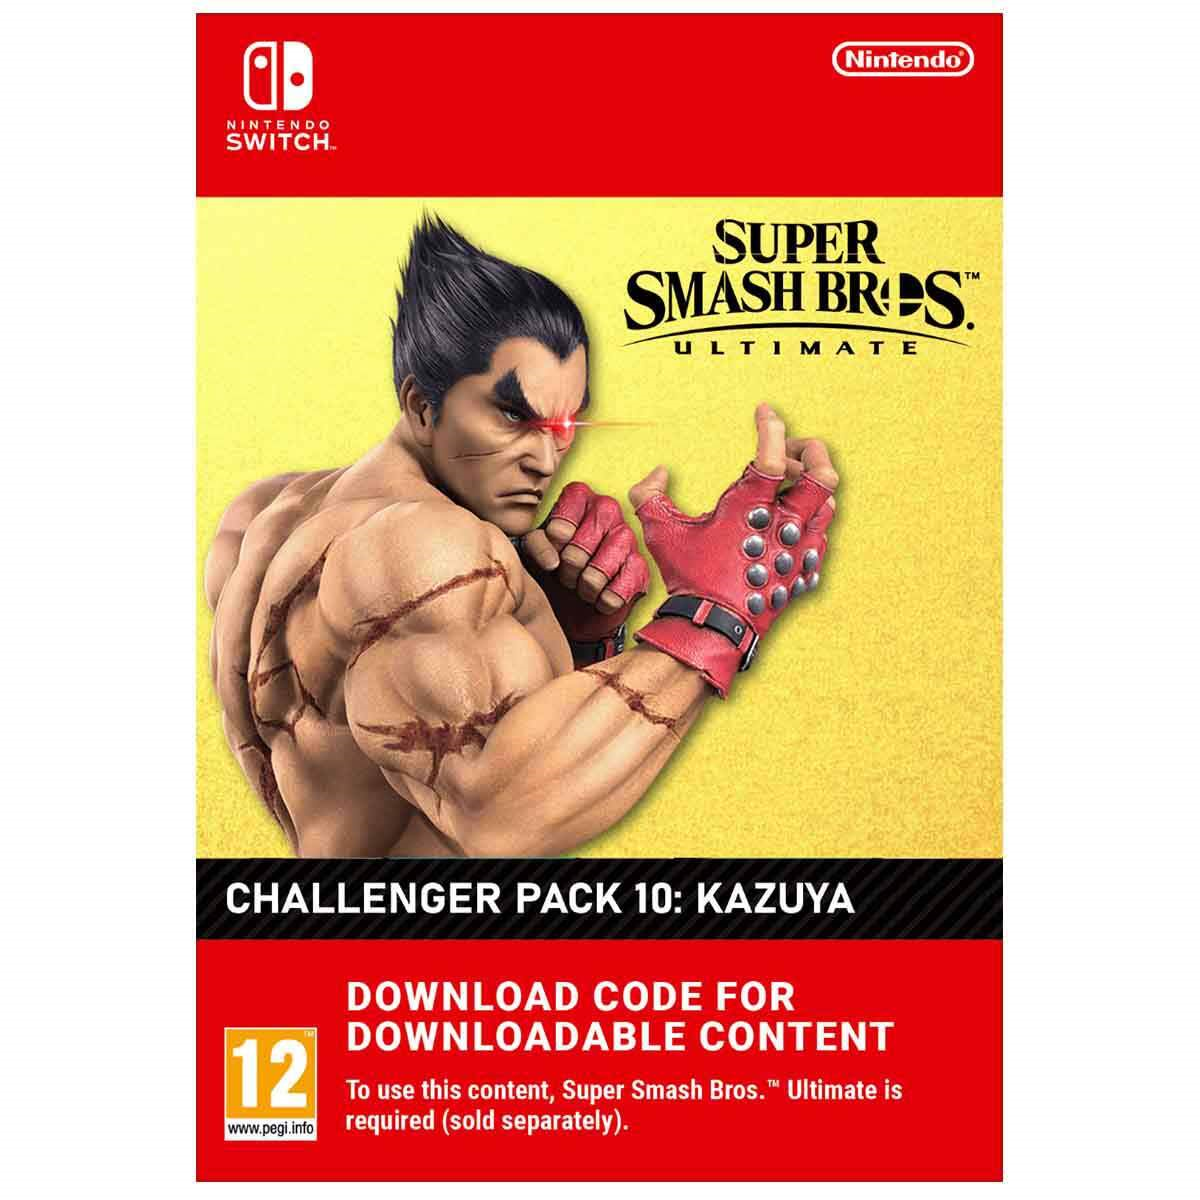 Super Smash Bros. Ultimate Challenger Pack 10 Kazuya from TEKKEN